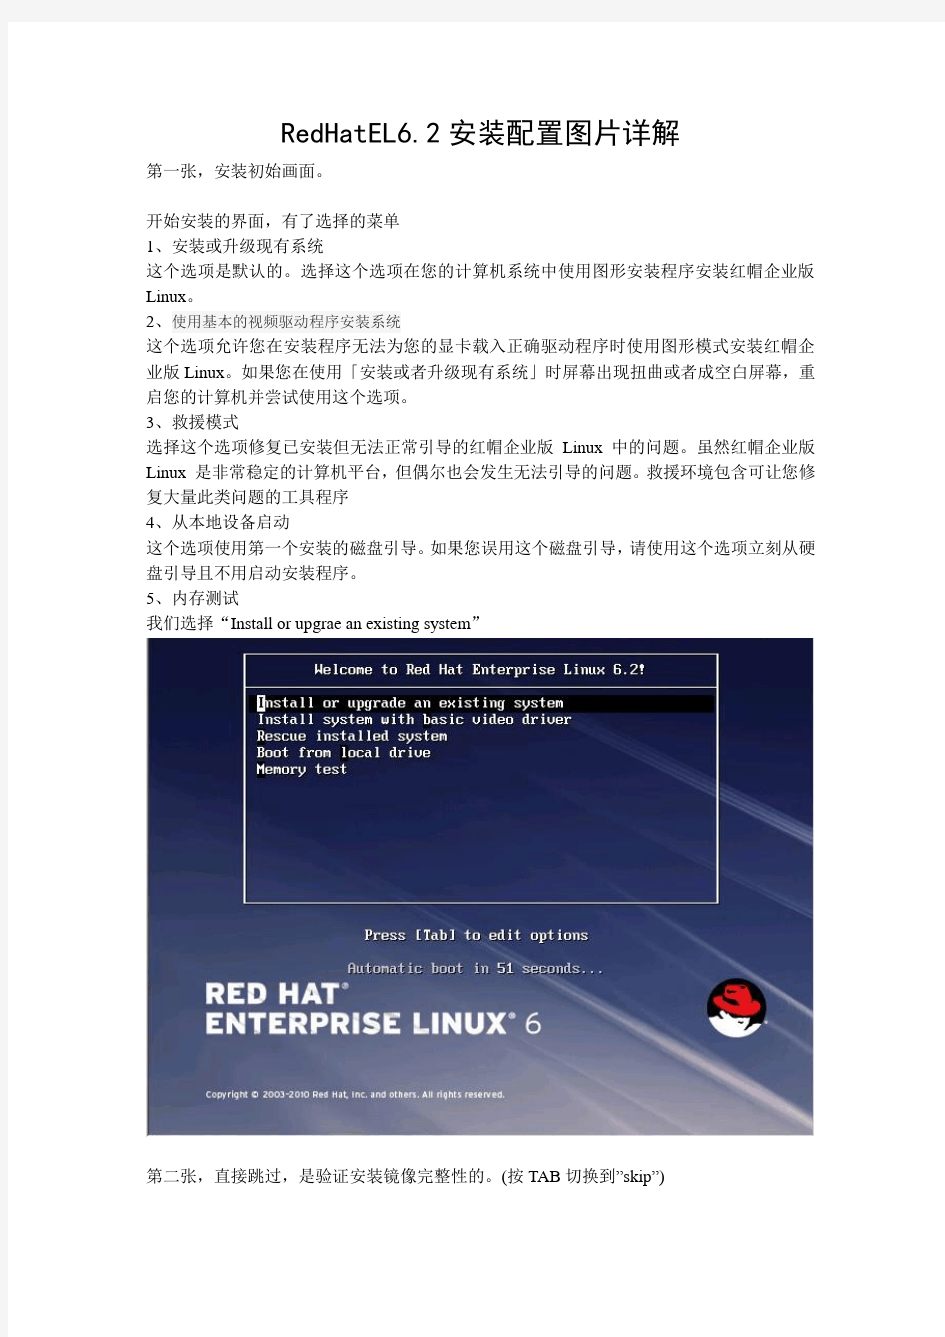 Red Hat Enterprise Linux 6.2安装配置过程